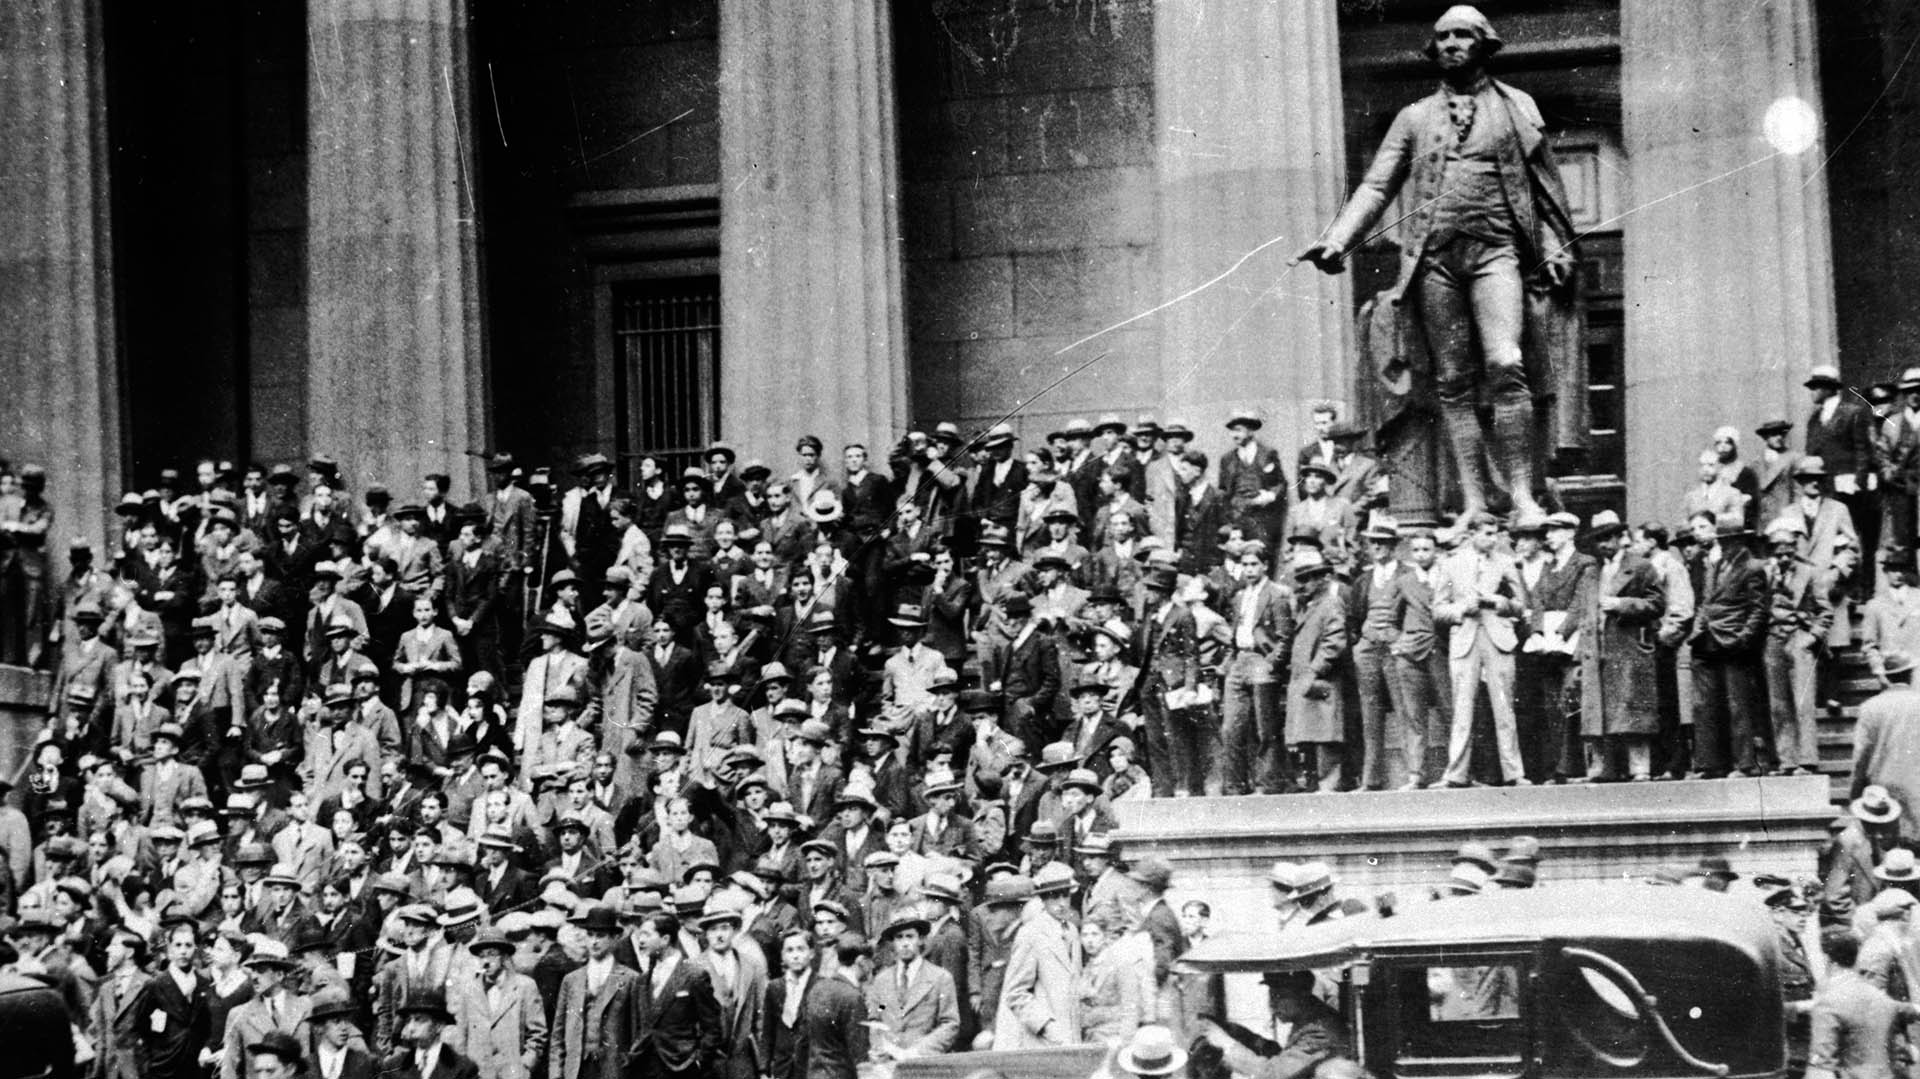 Una multitud fuera del edificio del Tesoro Nacional (hoy la Federal Hall National Memorial) junto a la estatua de George Washington, frente a la Bolsa de Nueva York, en octubre de 1929 (Photo by Keystone/Getty Images)